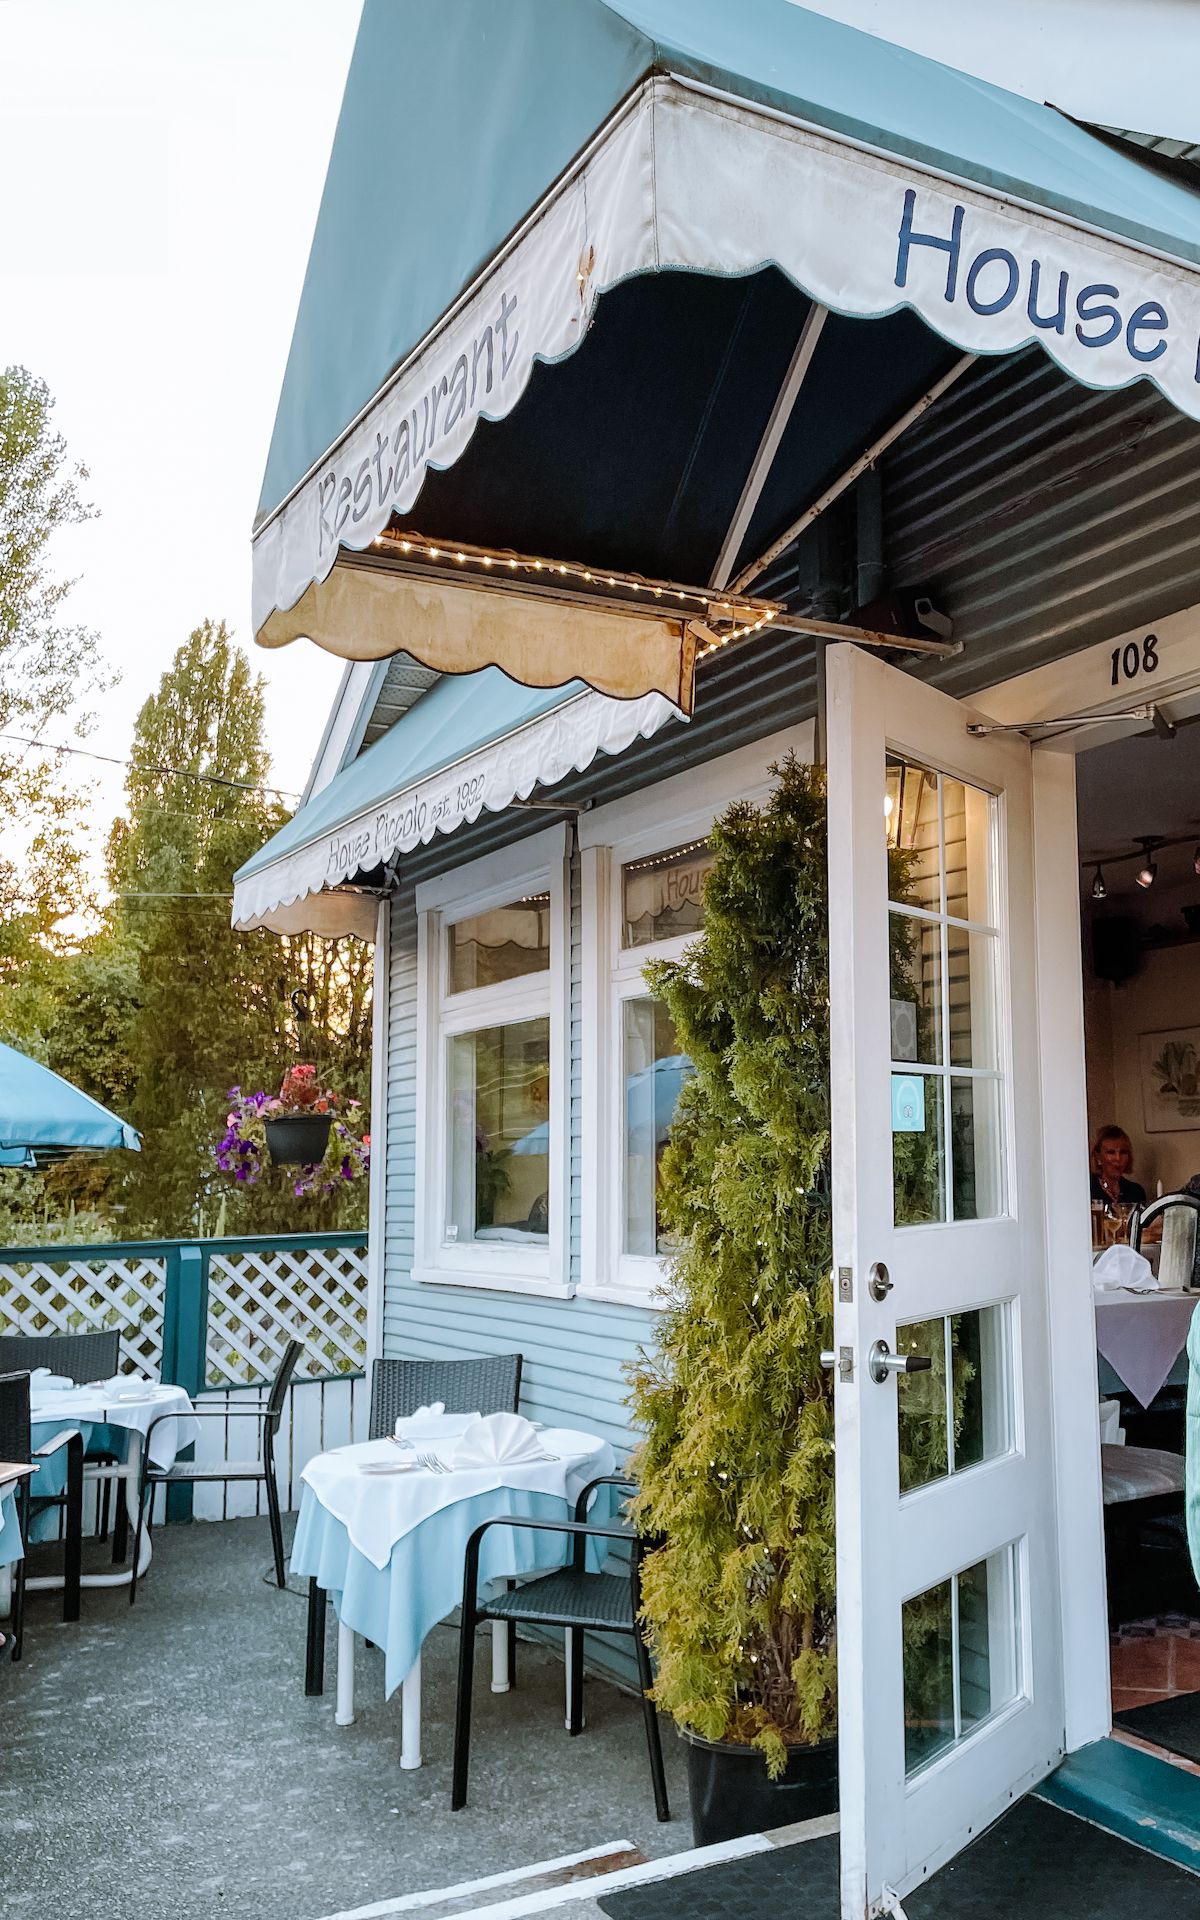 26 Best Restaurants on Salt Spring Island, British Columbia